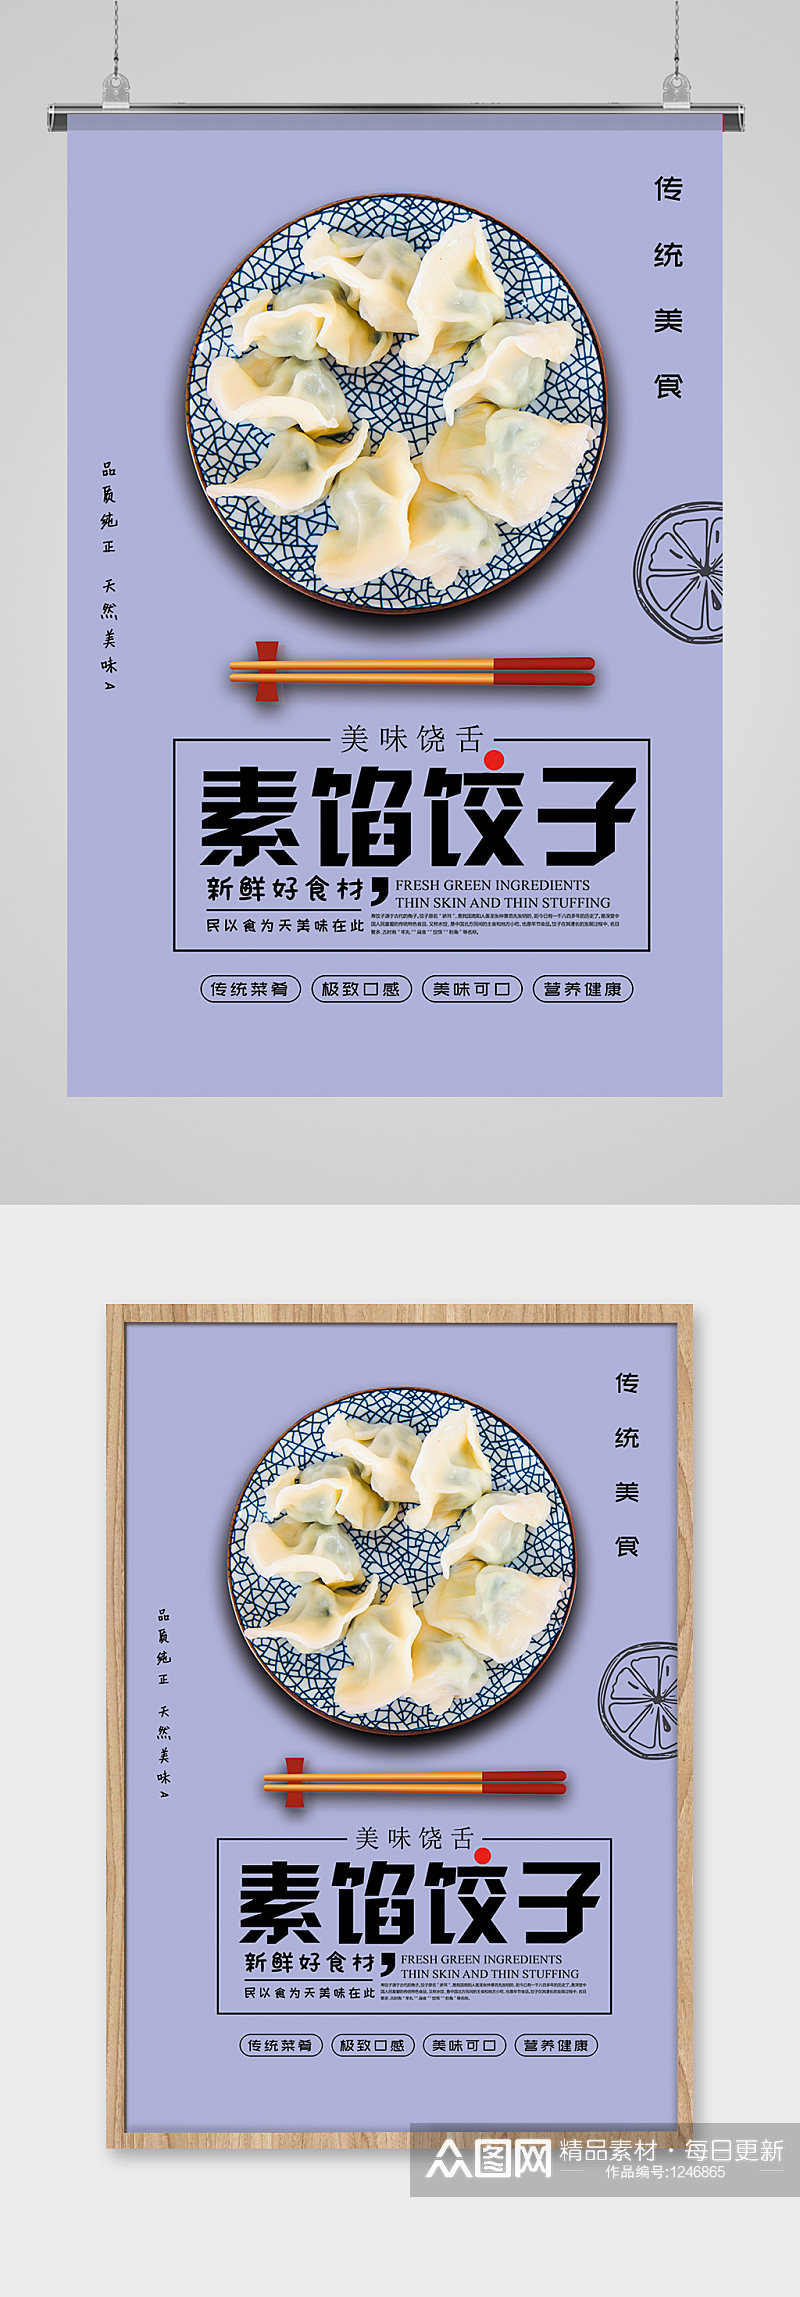 美食美味手工水饺海报设计素材